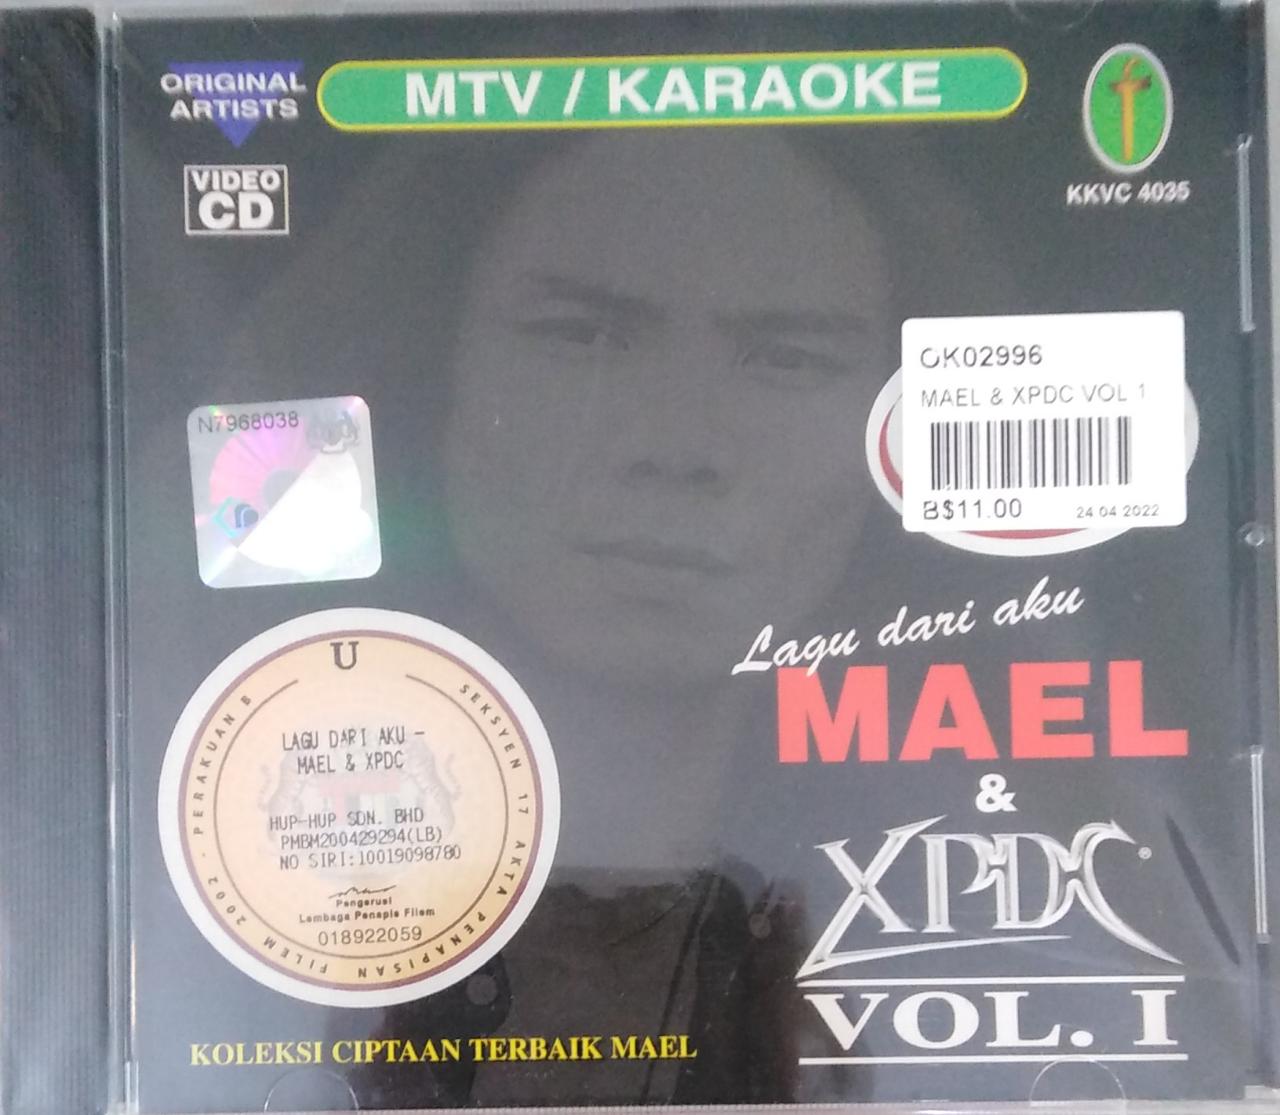 Mael & Xpdc Vol.1